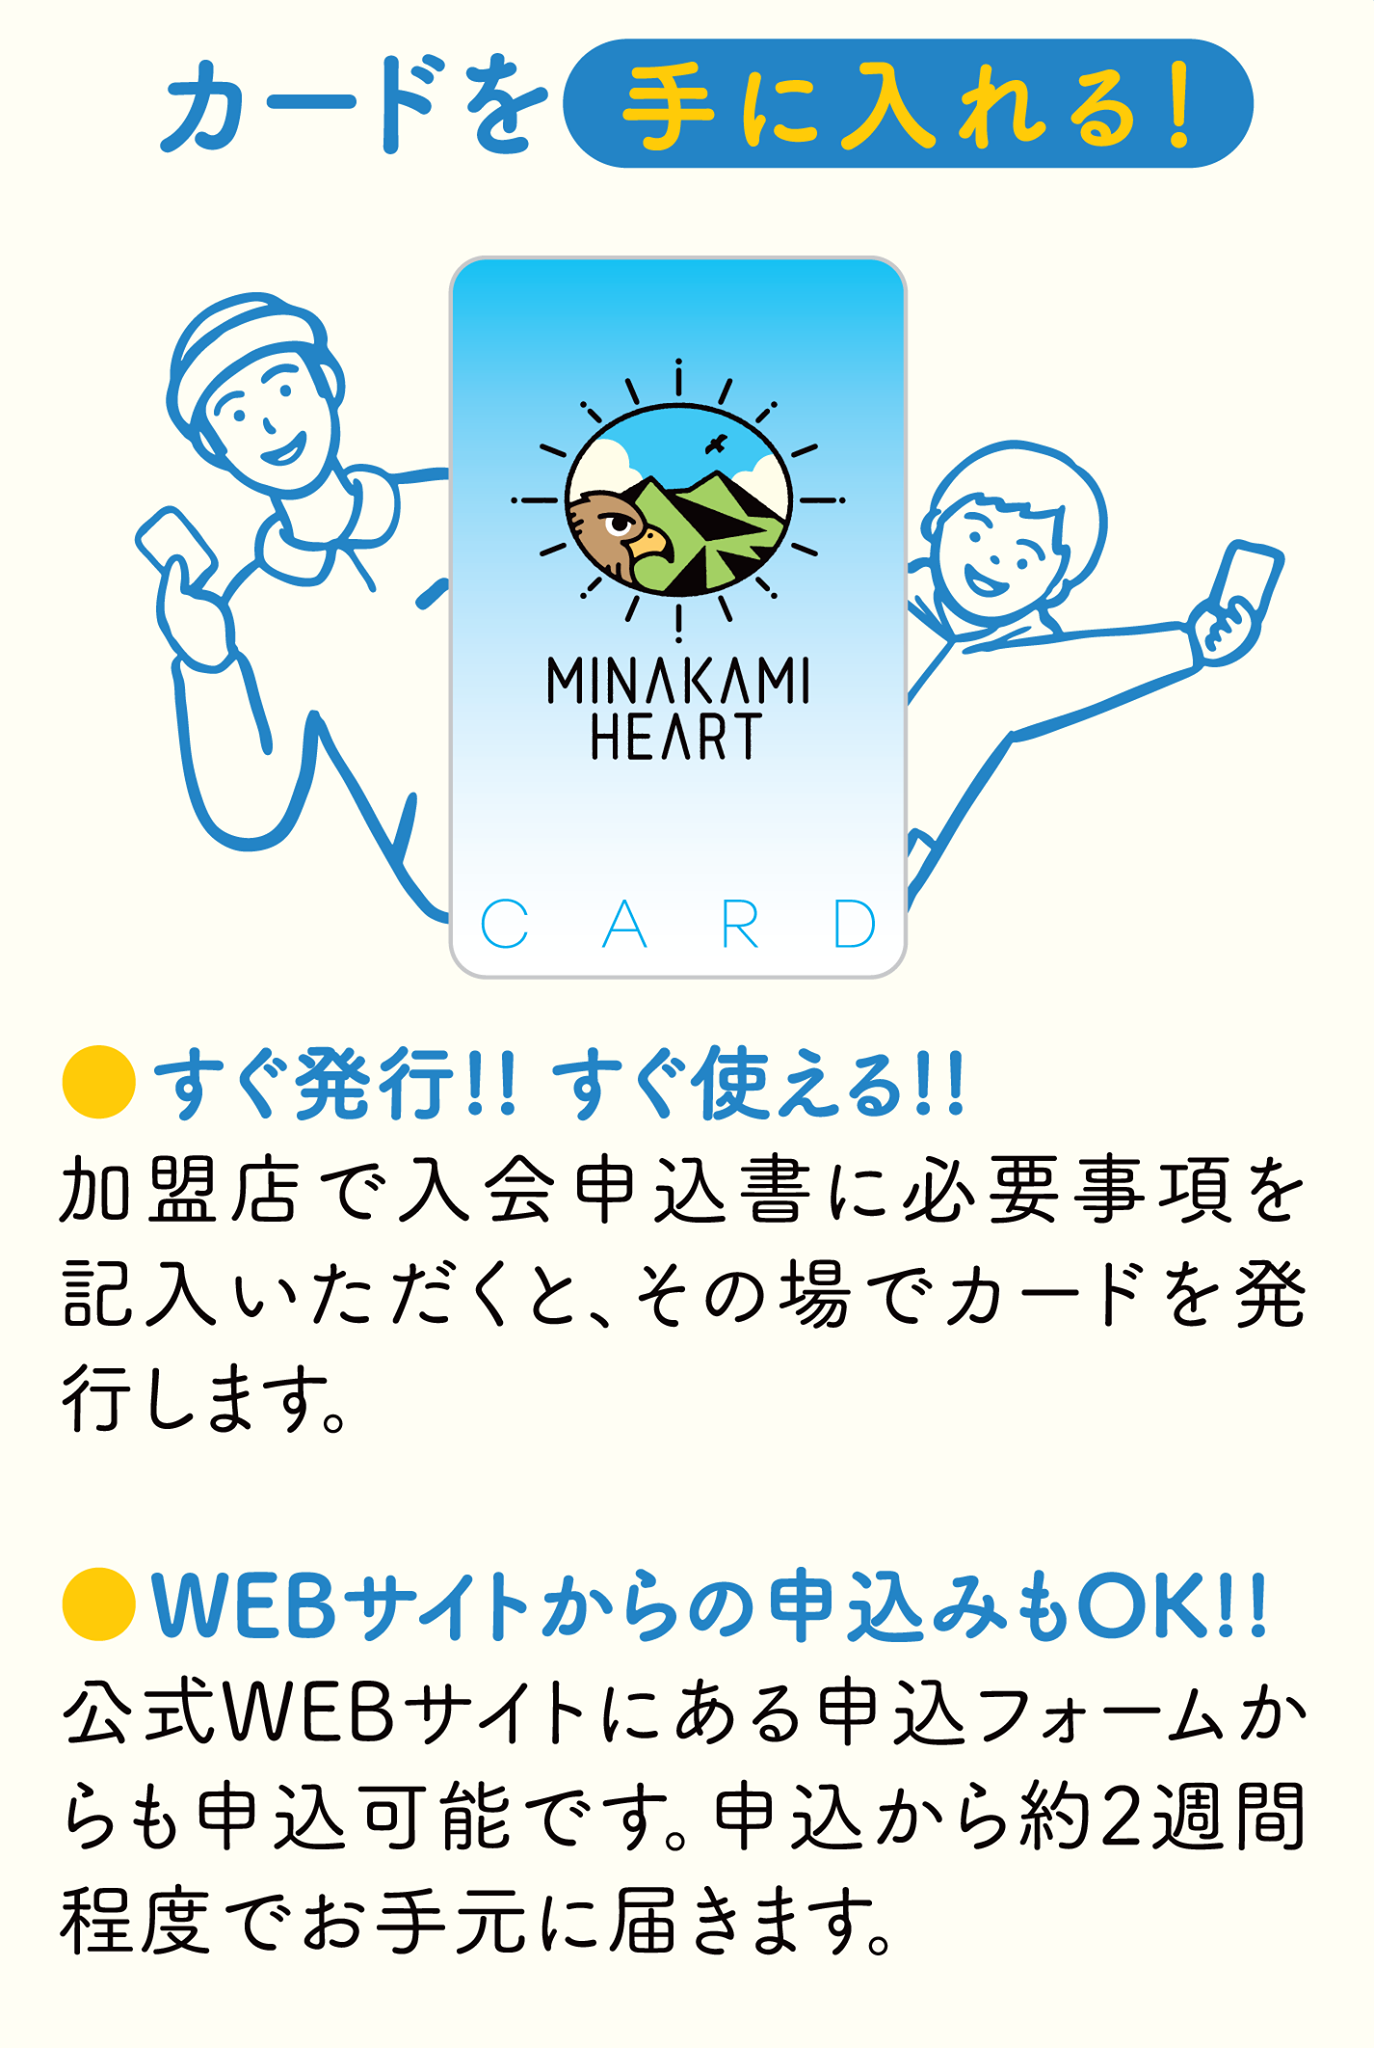 MINAKAMI HEART カード